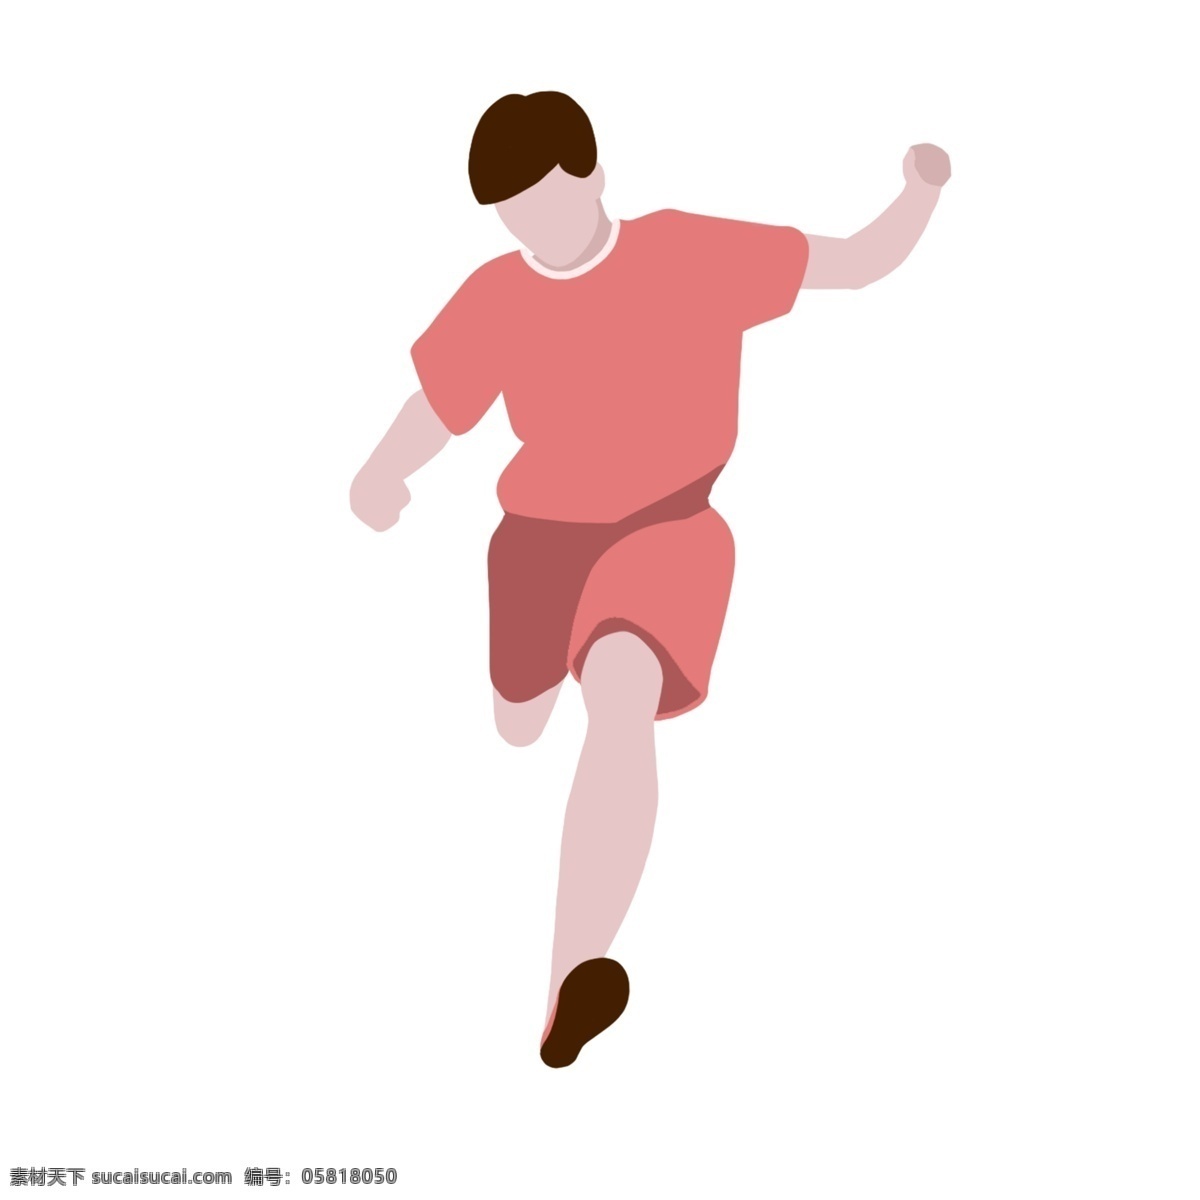 俄罗斯 世界杯 踢 足球 人物 色彩 卡通人物 俄罗斯世界杯 踢足球 青春 踢球动作 设计元素